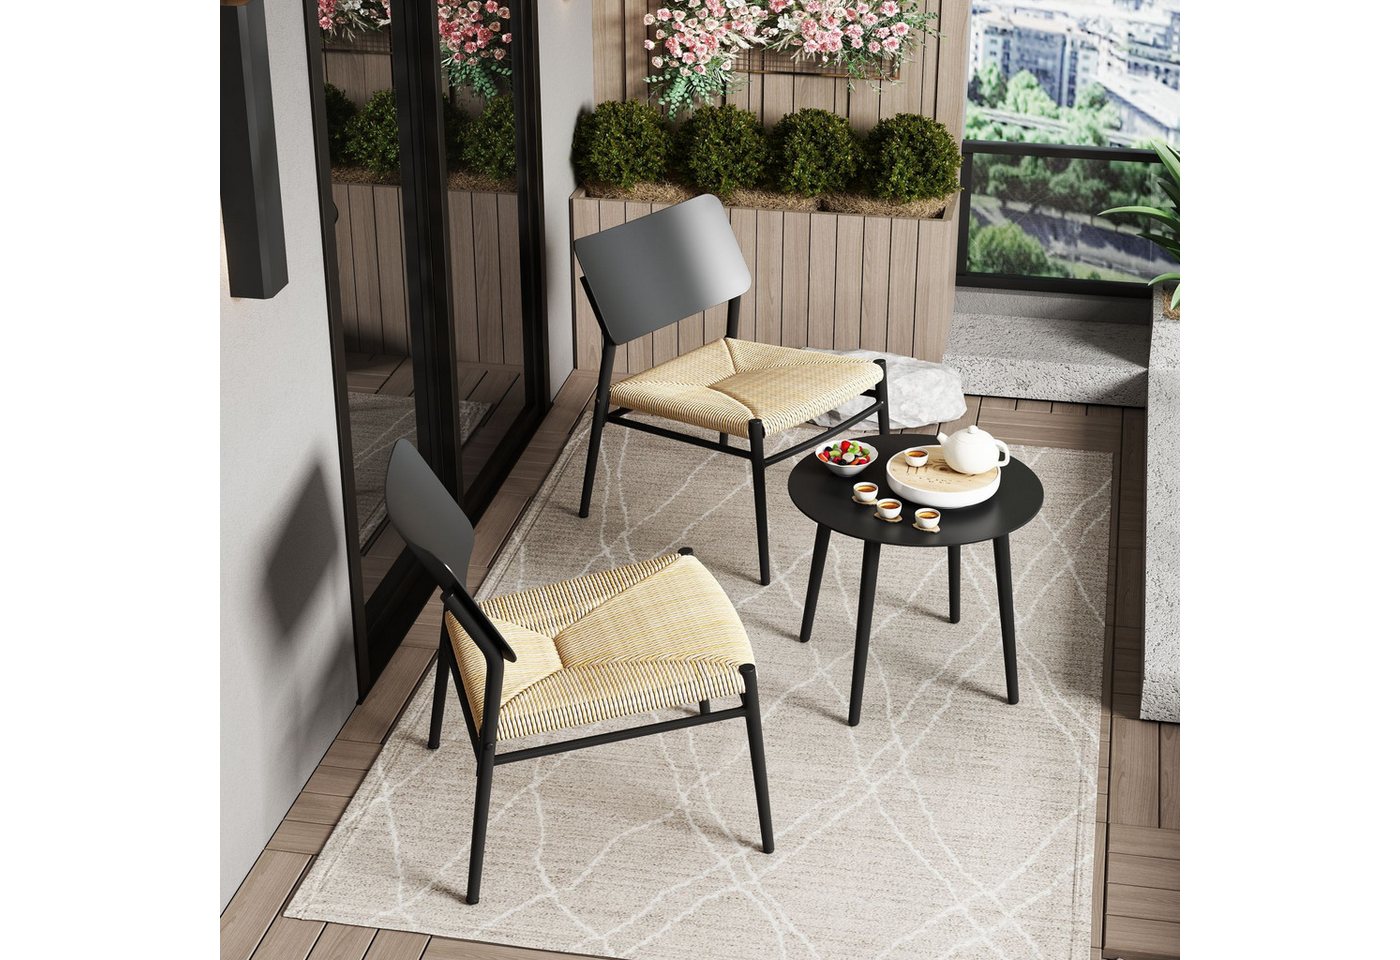 Flieks Balkonset, Rattan Sitzmöbel-Set mit Gartenstühle und Gartentisch aus Aluminium von Flieks